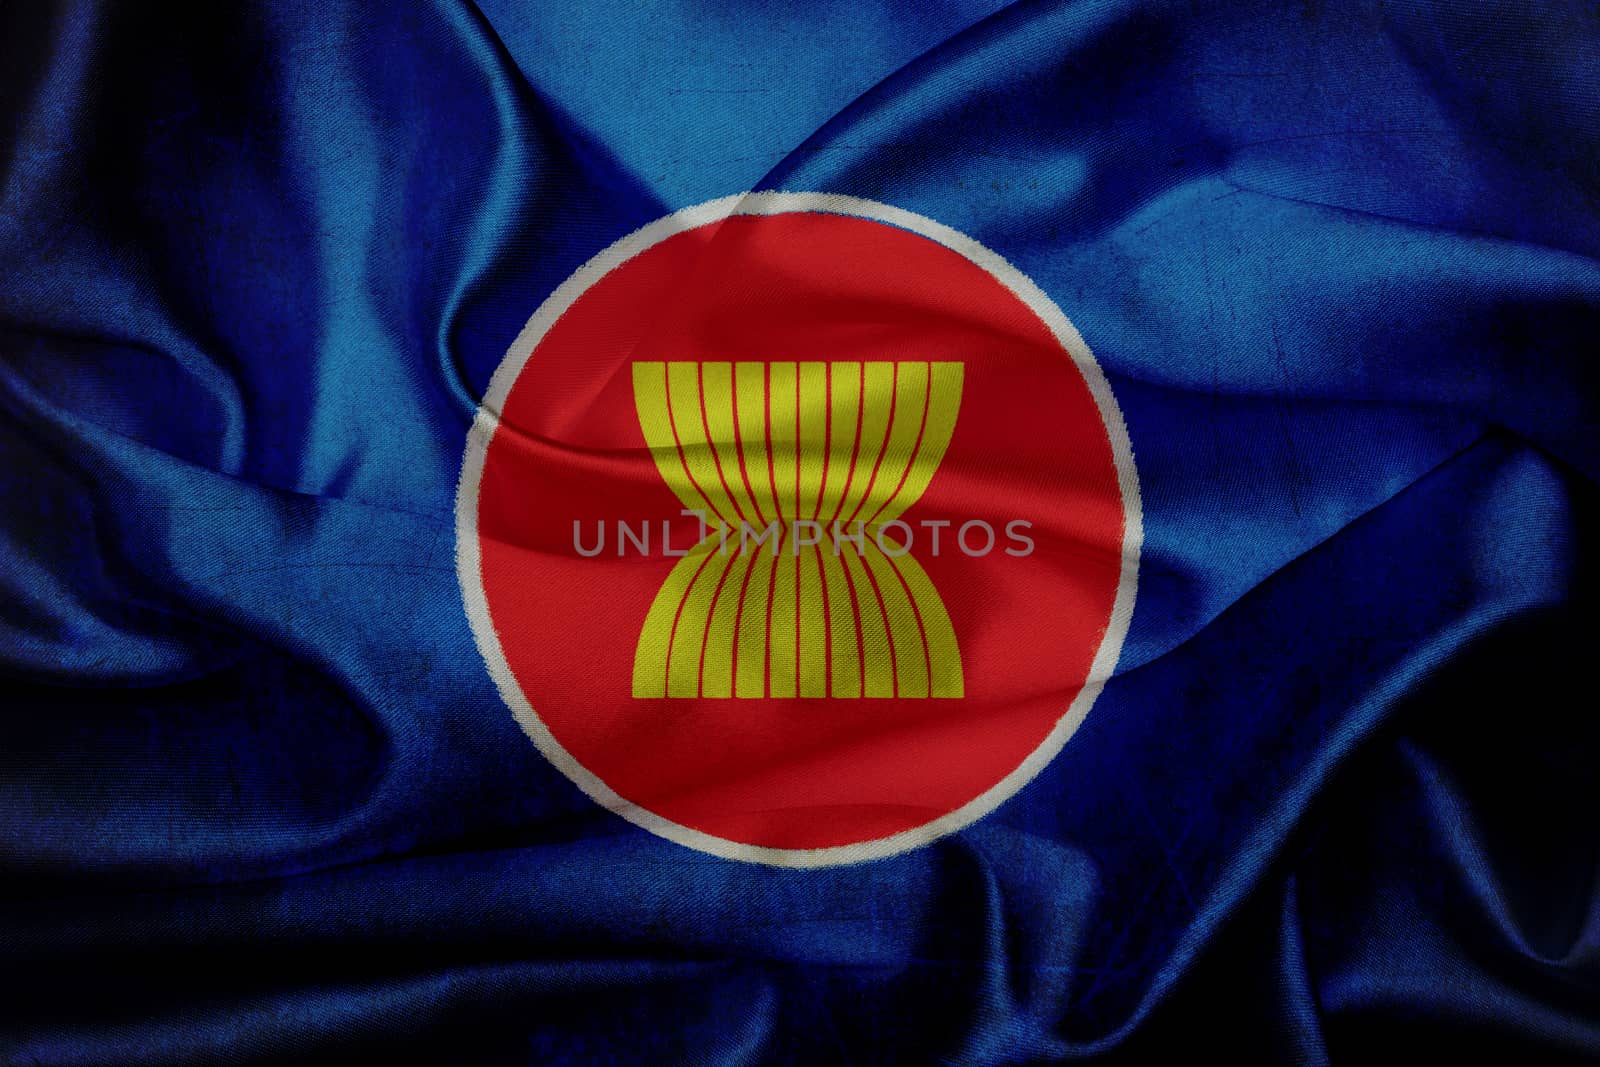 Asean Economic Community (AEC) waving flag